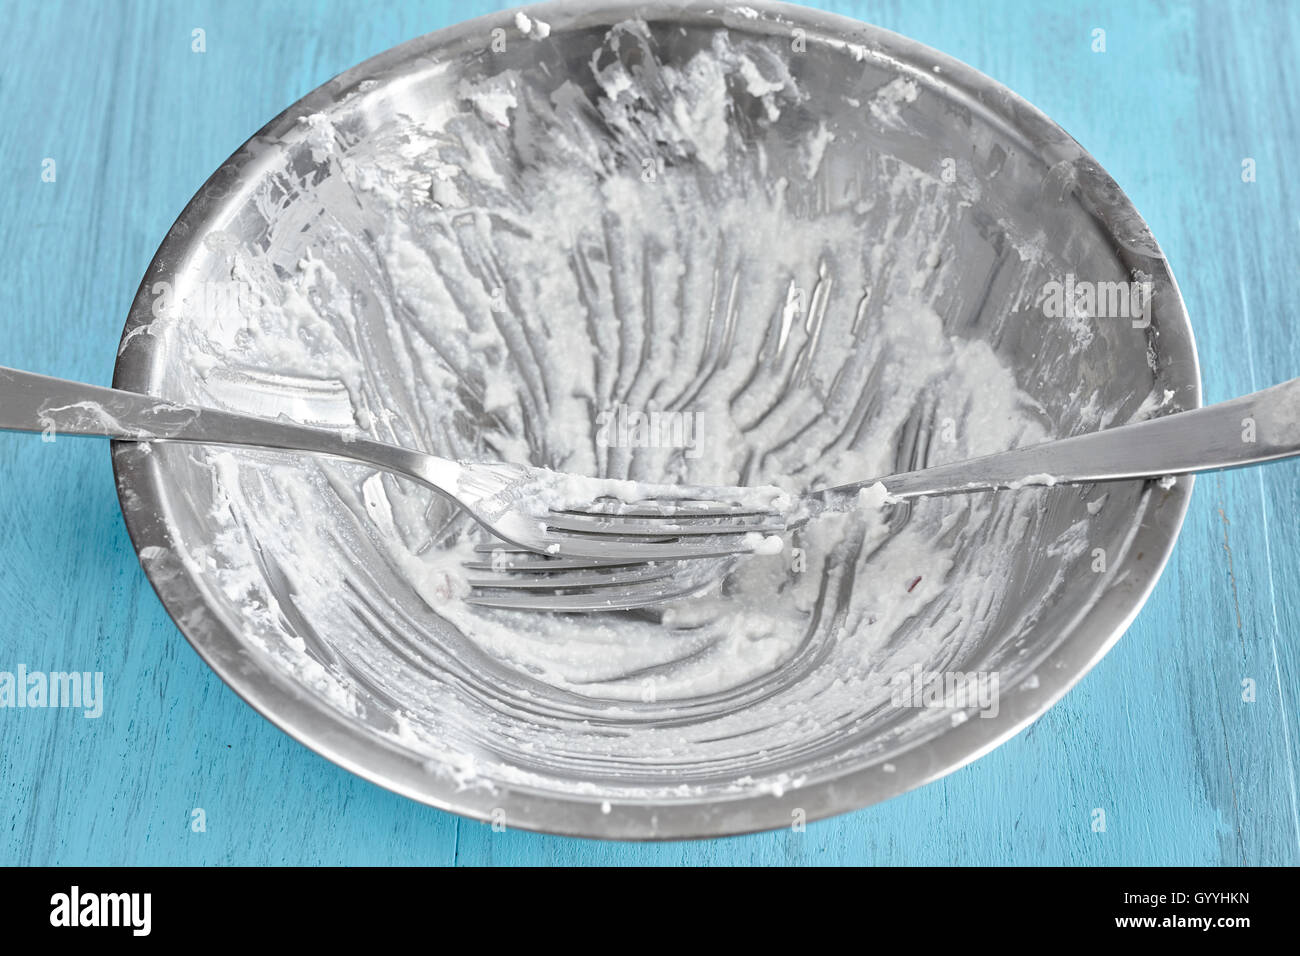 Sporca la coppa d'argento dopo cottage cheese colazione con forche su tavola in legno rustico. Foto Stock